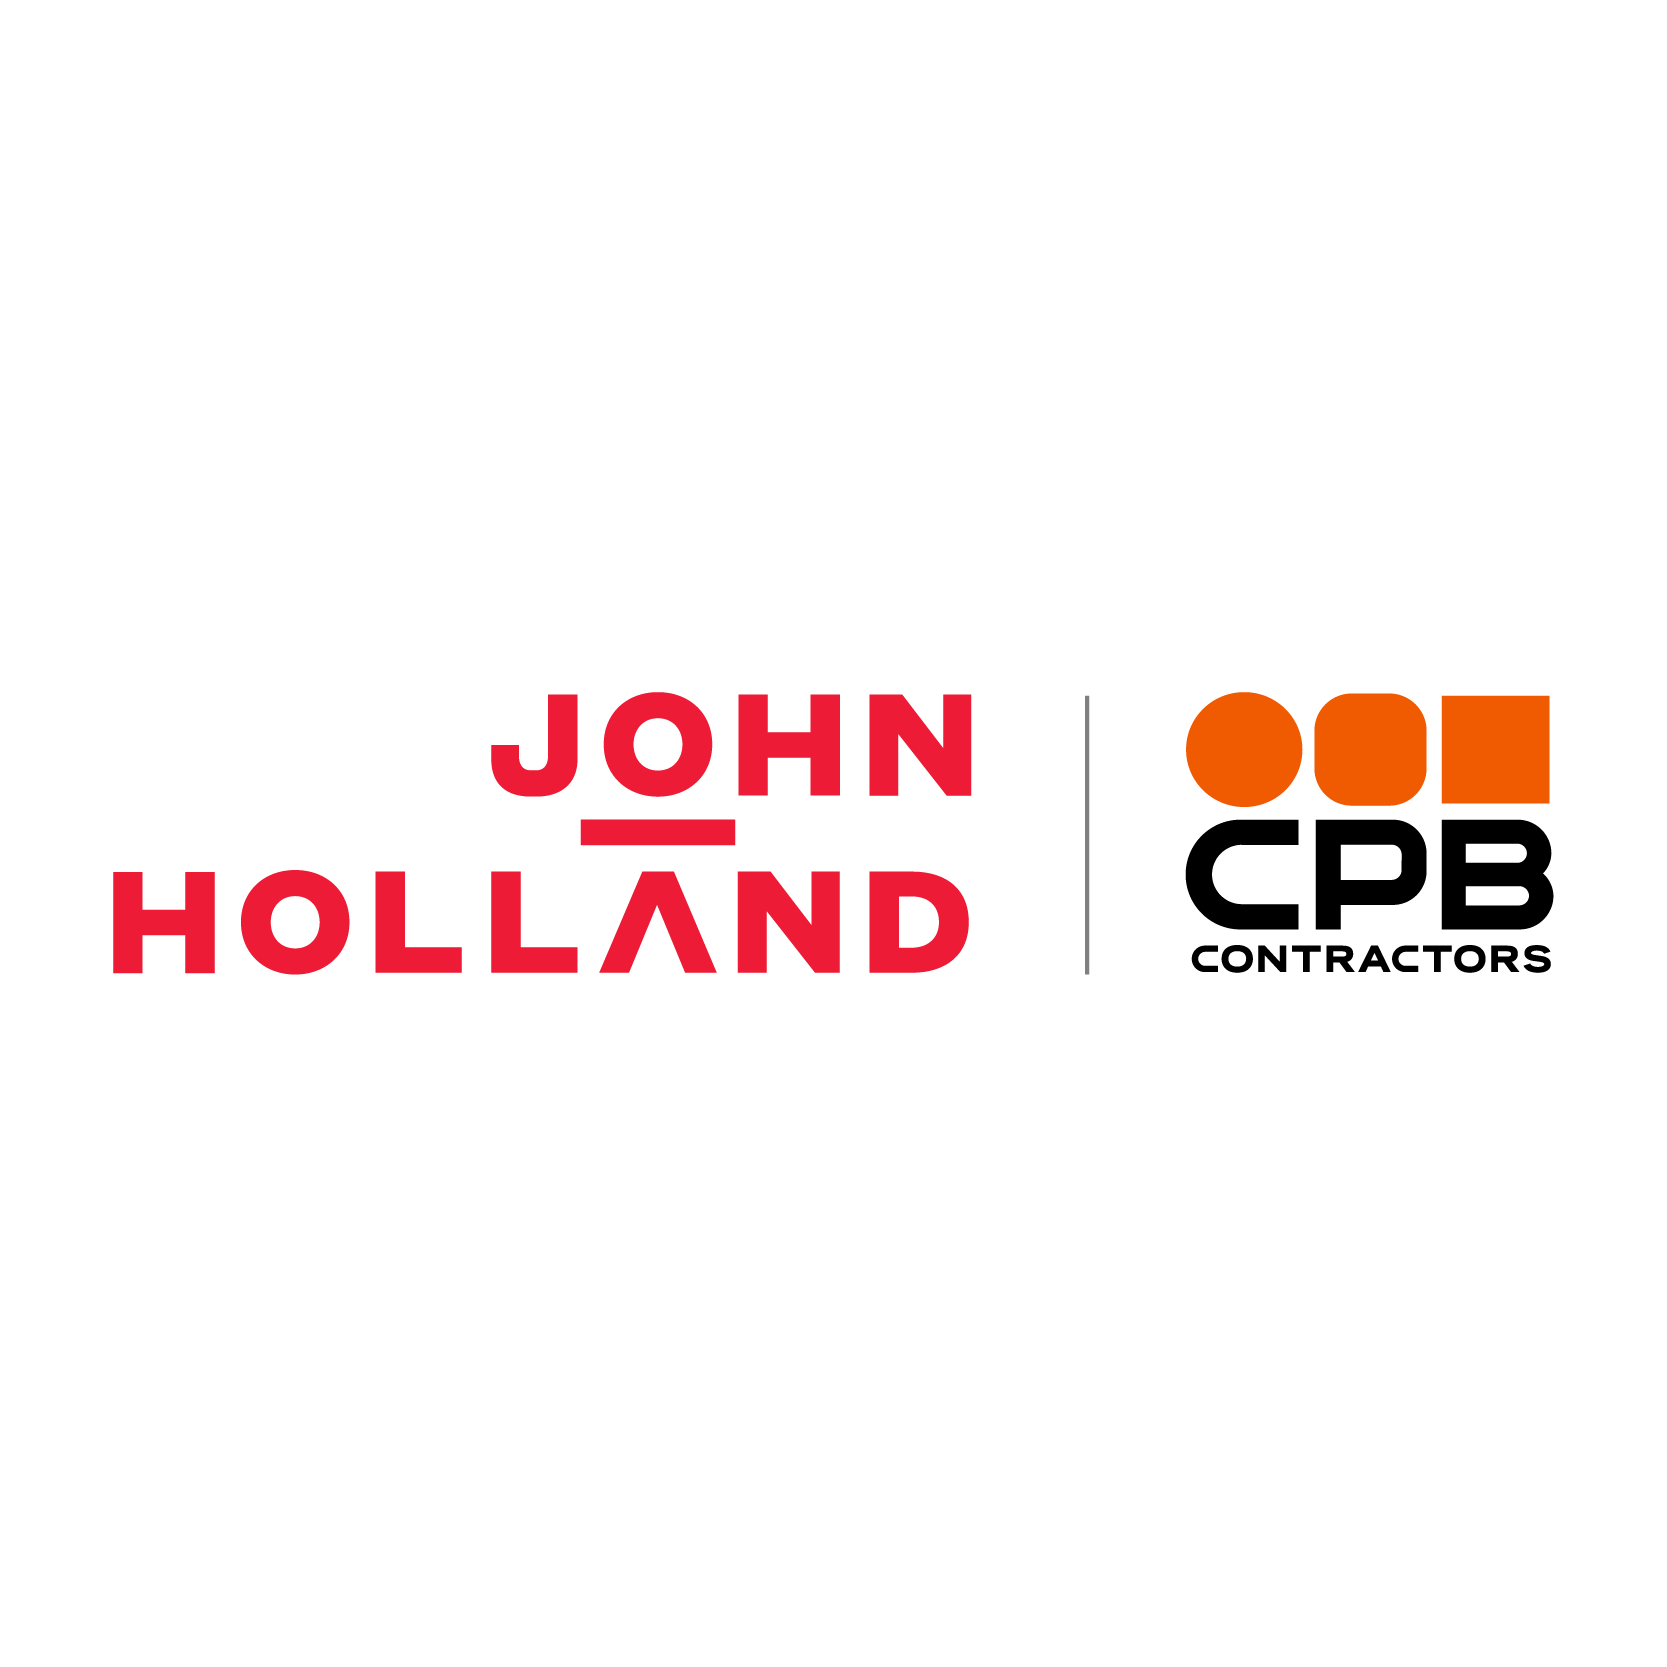 JOHN HOLLAND CPB CONTRACTORS logo